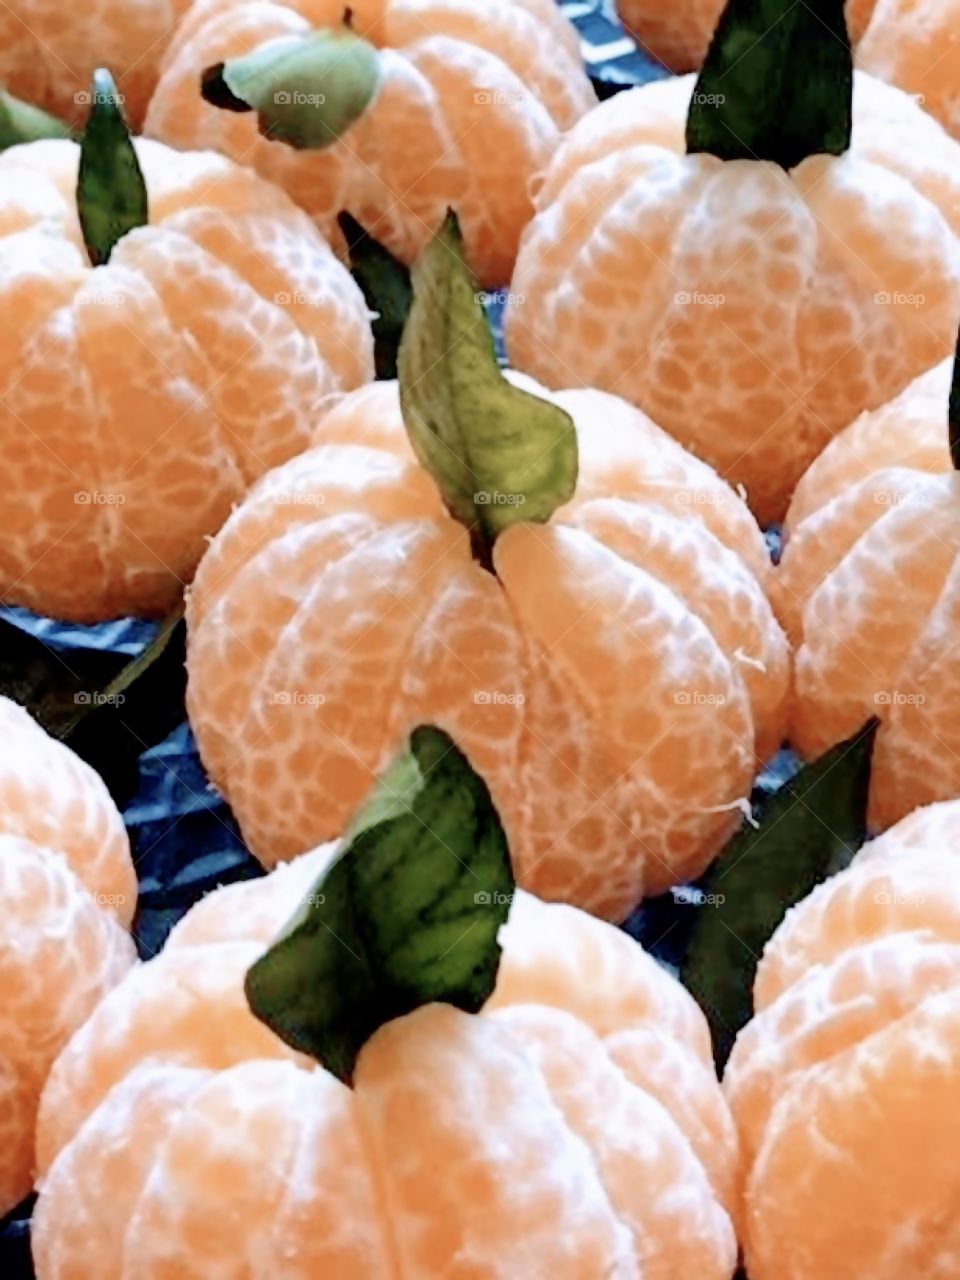 Various tangerines